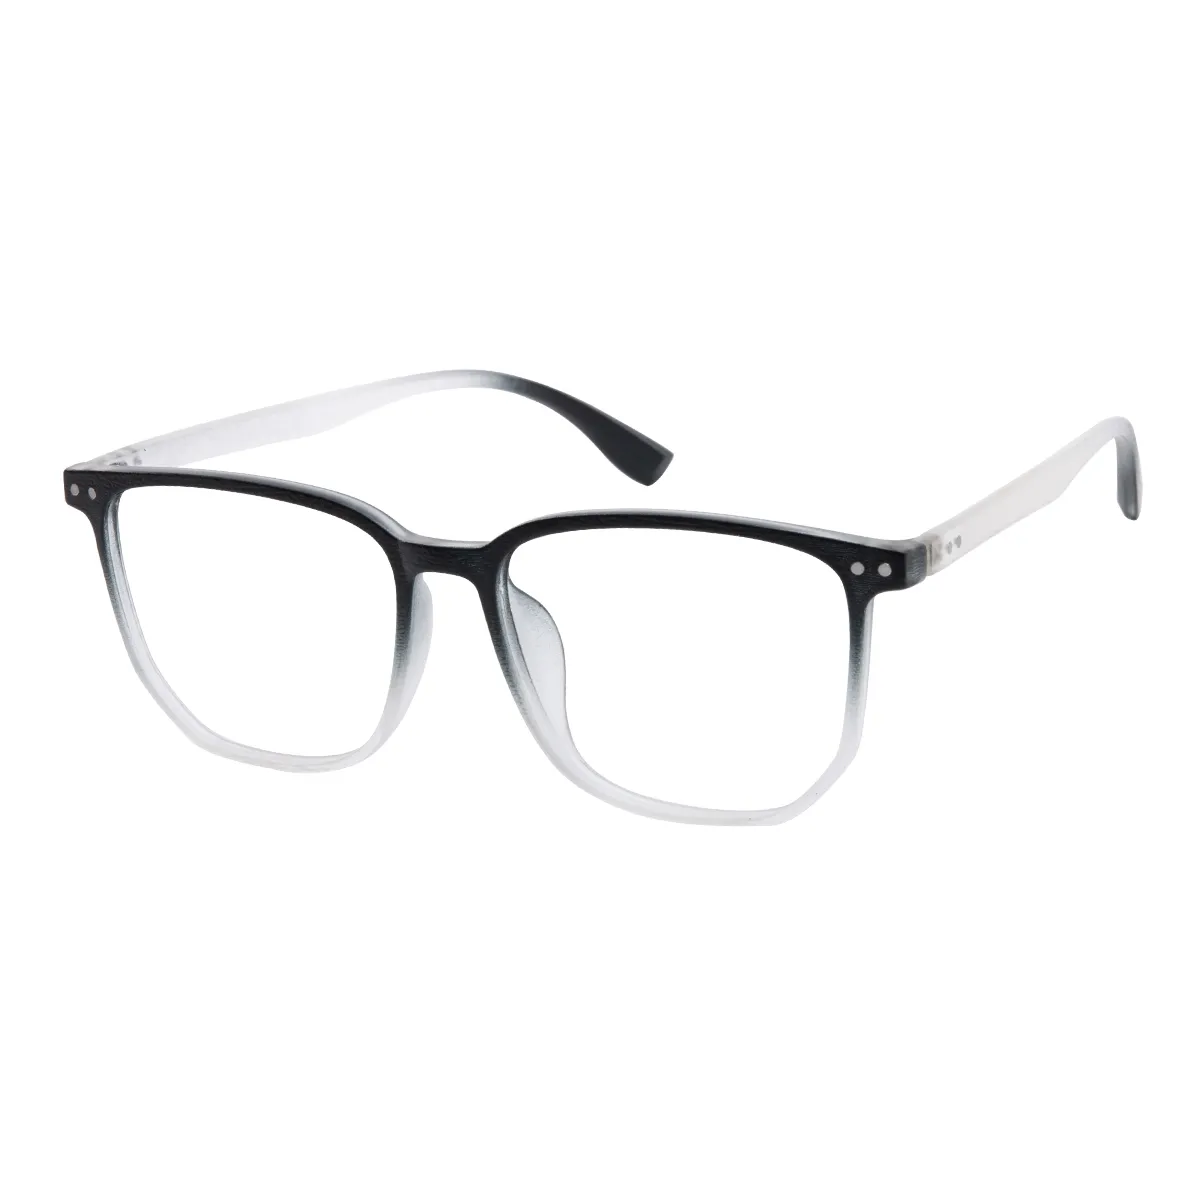 Vega - Square Black-Translucent Glasses for Men & Women